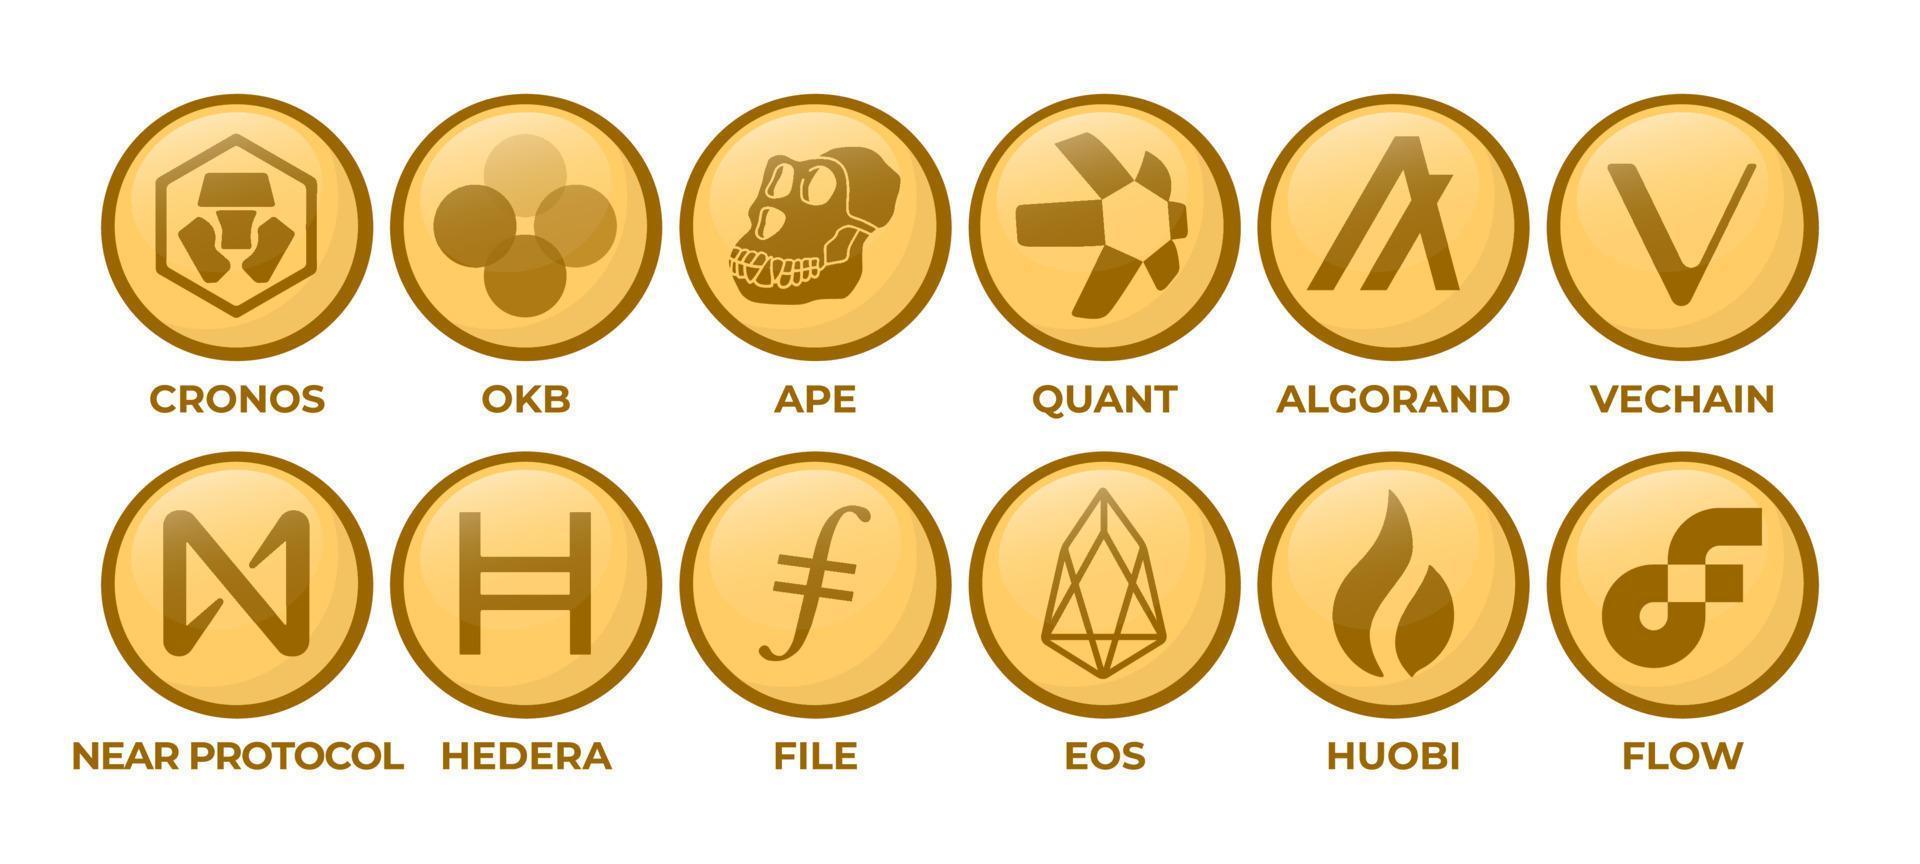 conjunto de monedas de logotipo de criptomoneda cronos, okb, mono, quant, algorand, vechain, protocolo cercano, hedera, archivo, eos, token de huobi, flujo vector